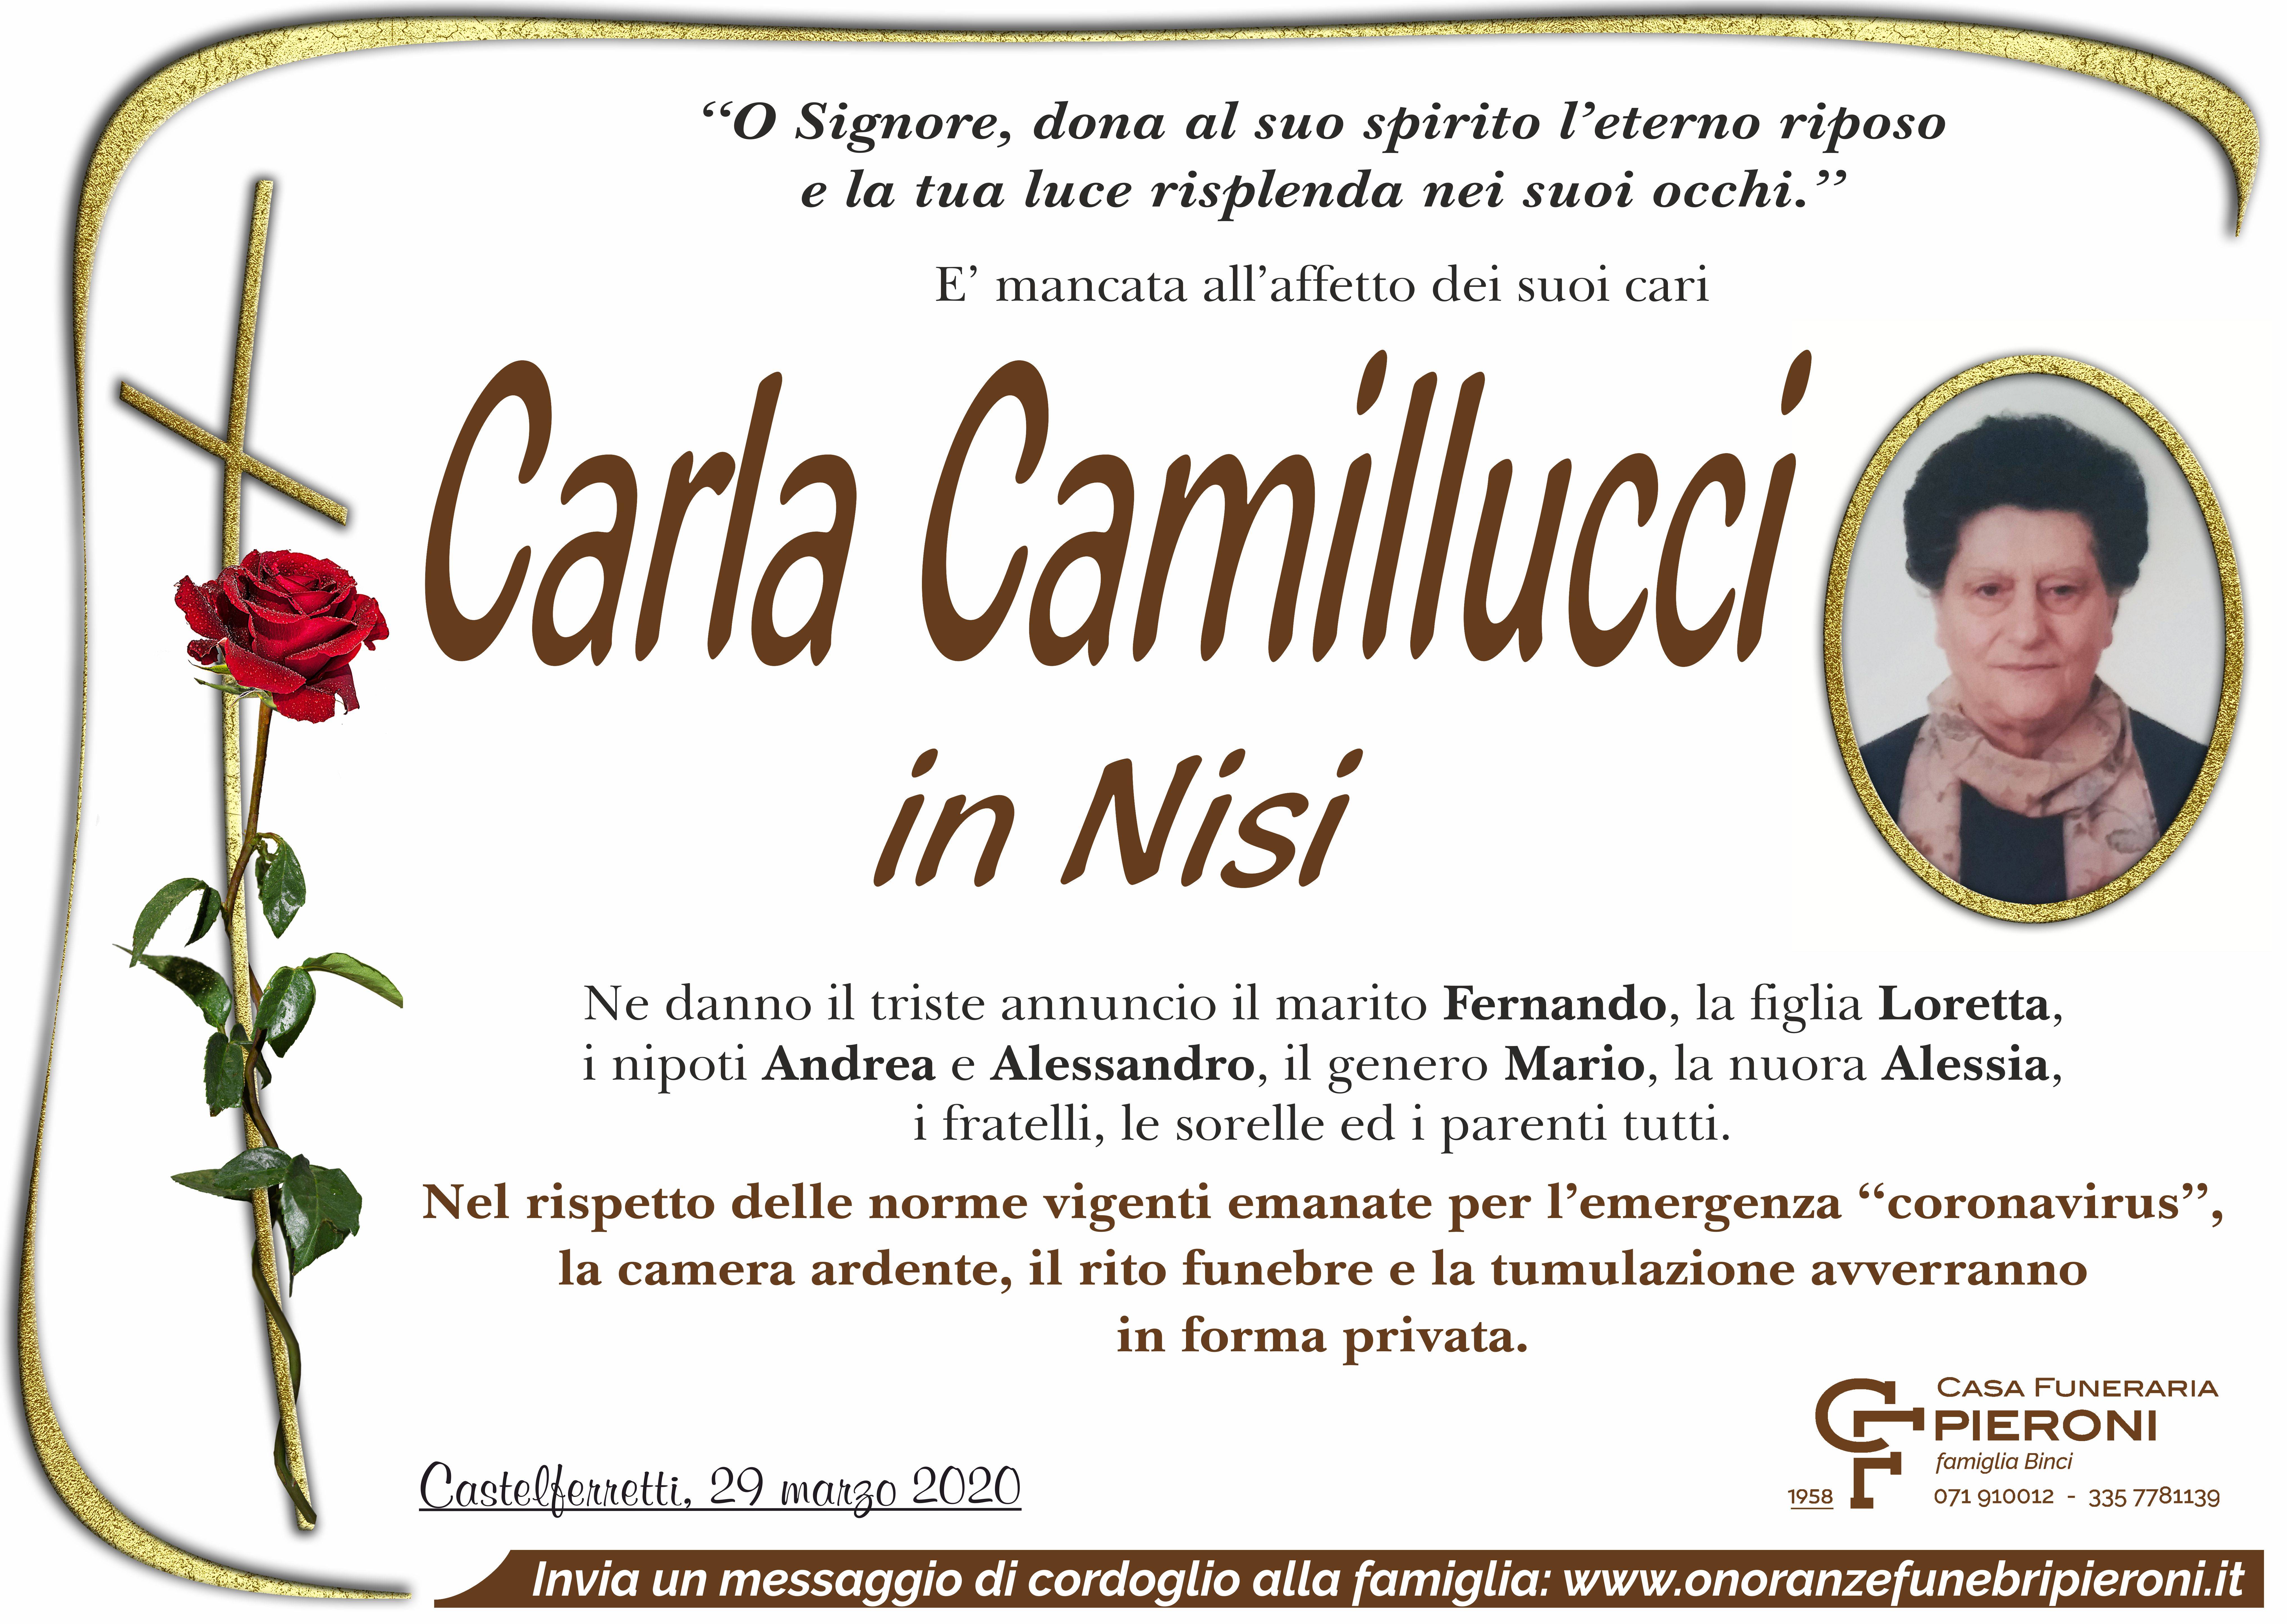 Carla Camillucci